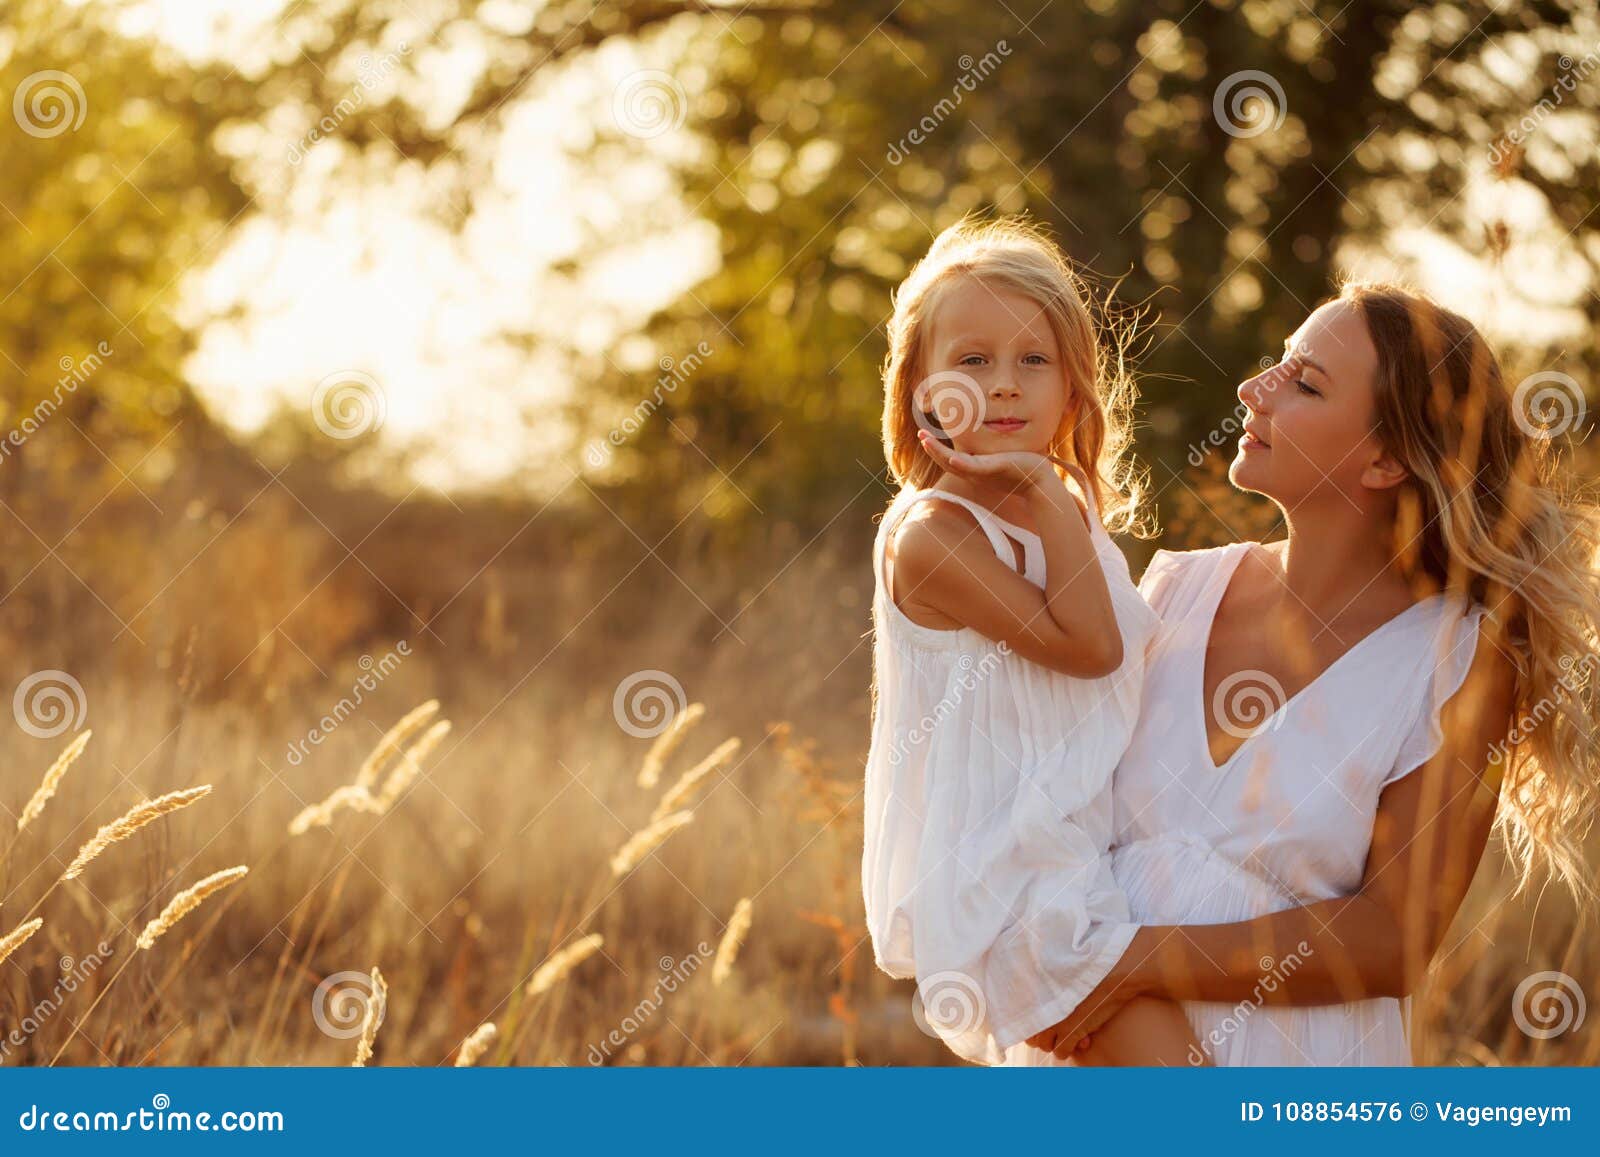 Blonde daughter. Мать держит дочь на руках. Мама держит дочку на руках. Мама держит дочь на руках картинка.